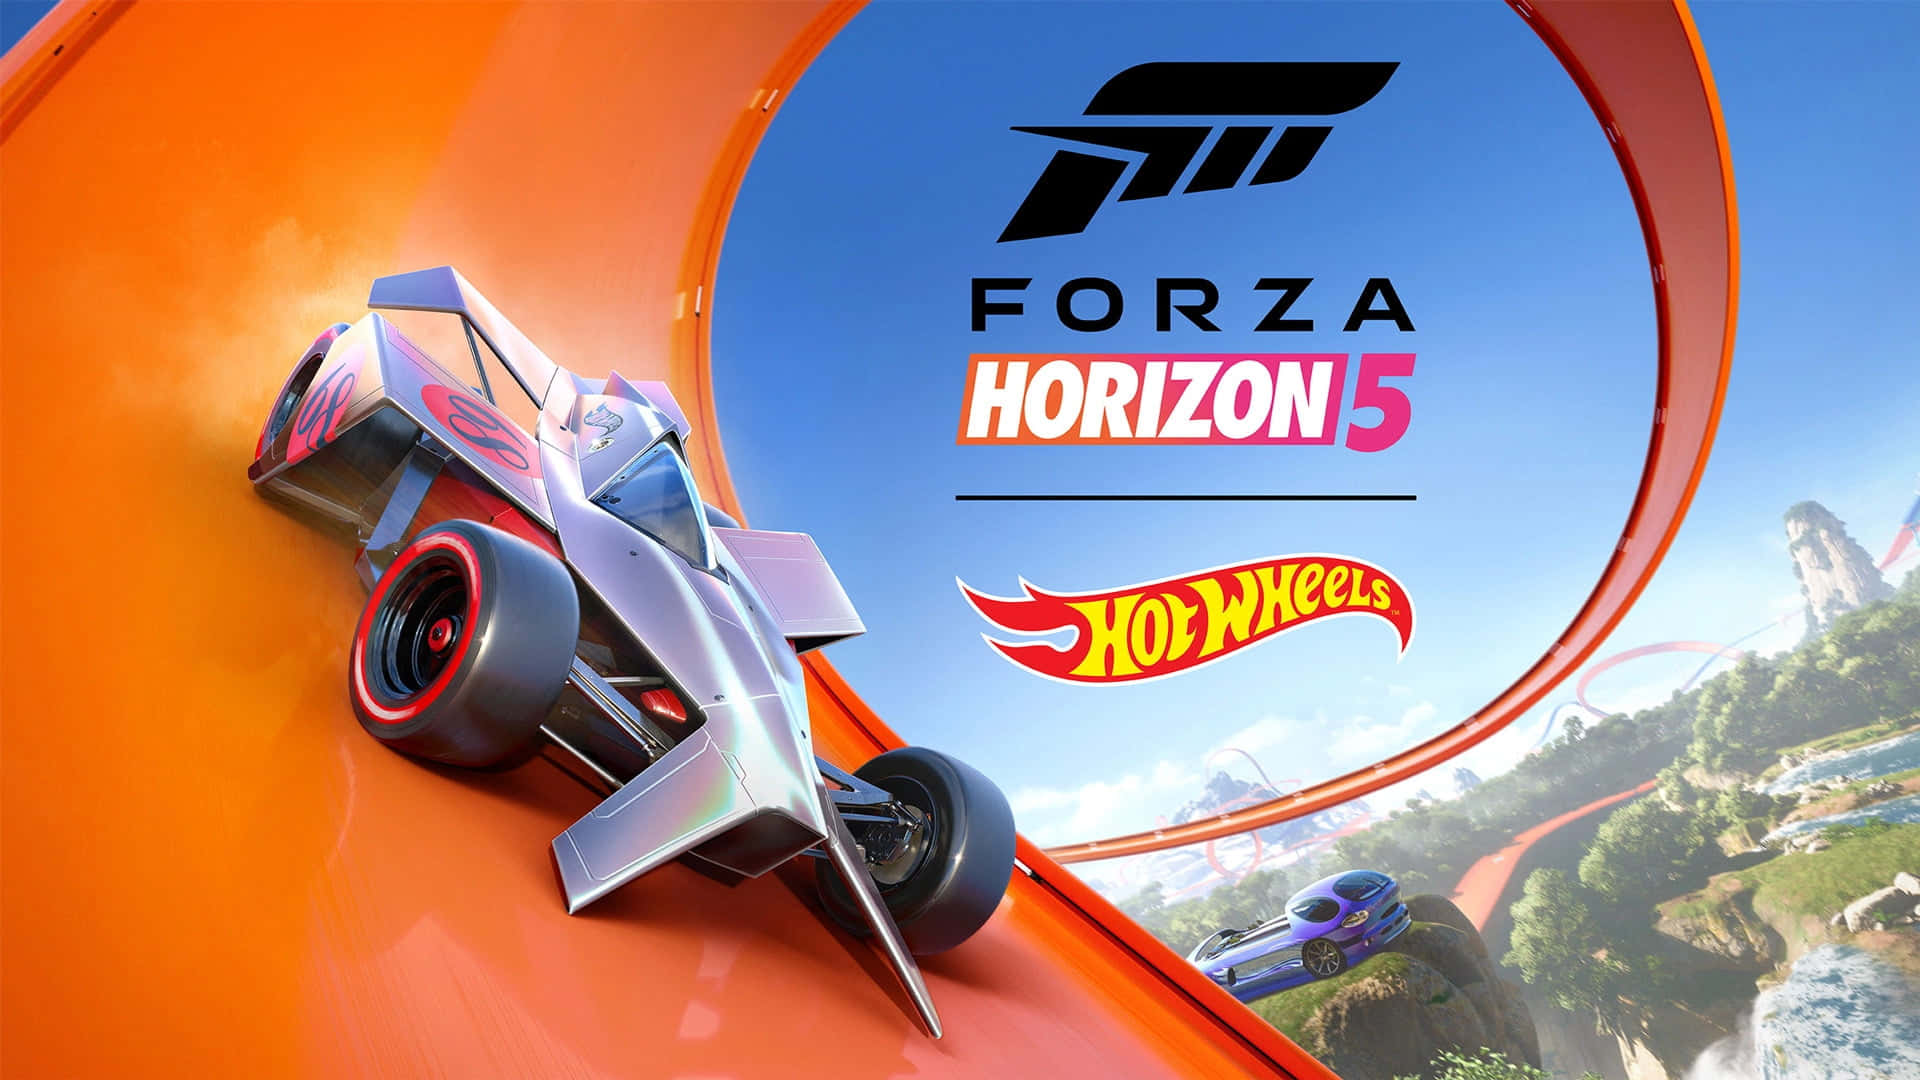 Para O Papel De Parede De Computador Ou Celular: Forza Horizon 5 - Hot Wheels